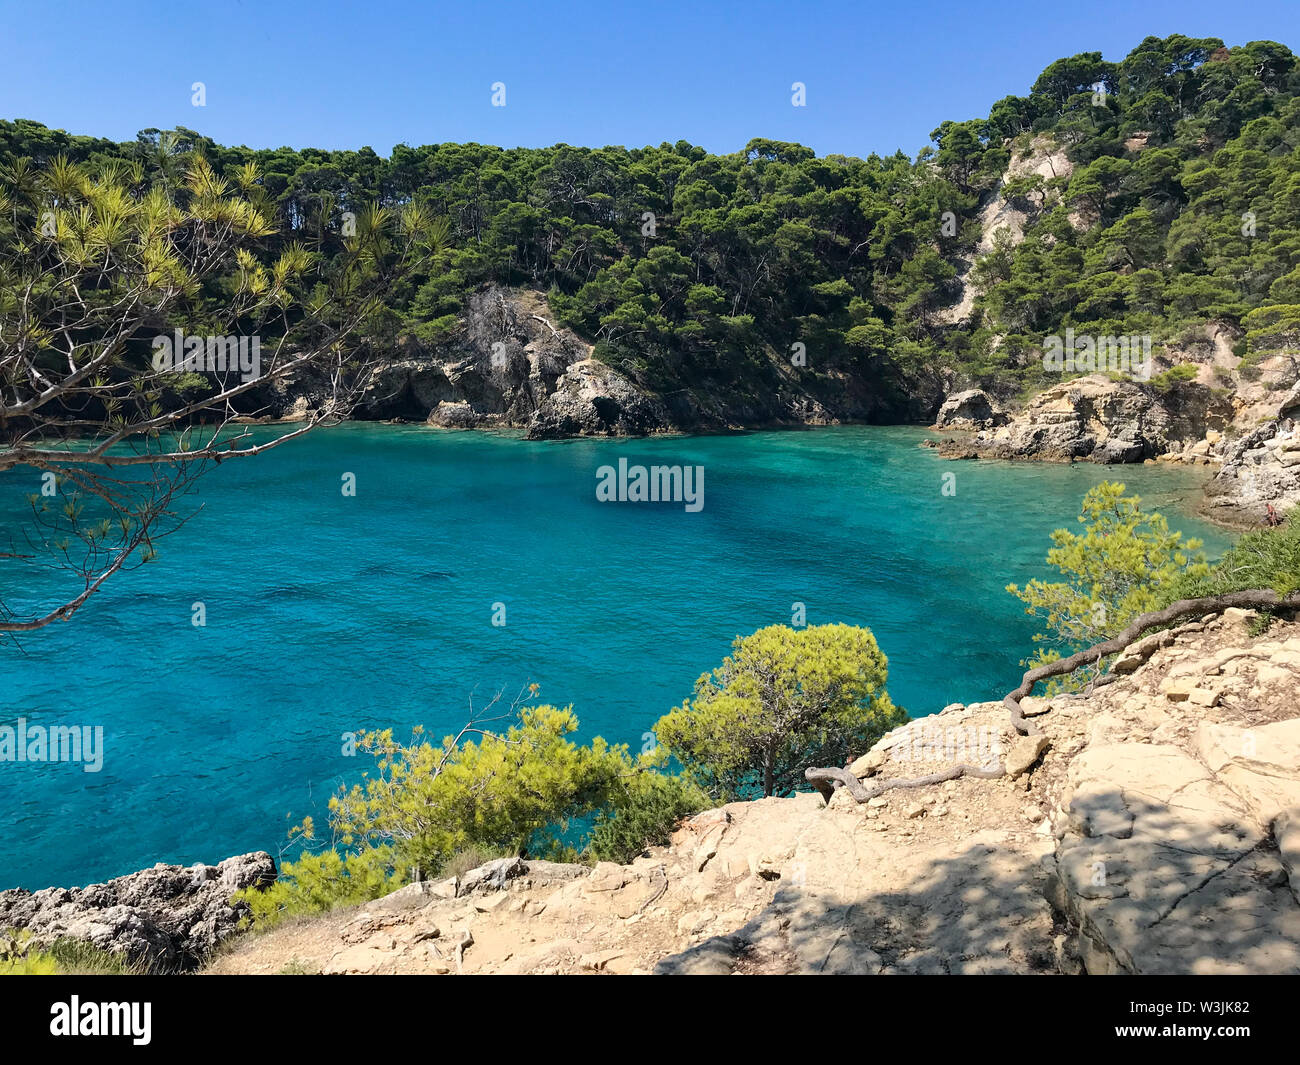 La baia di Cala Matano nelle isole Tremiti in Italia Foto Stock